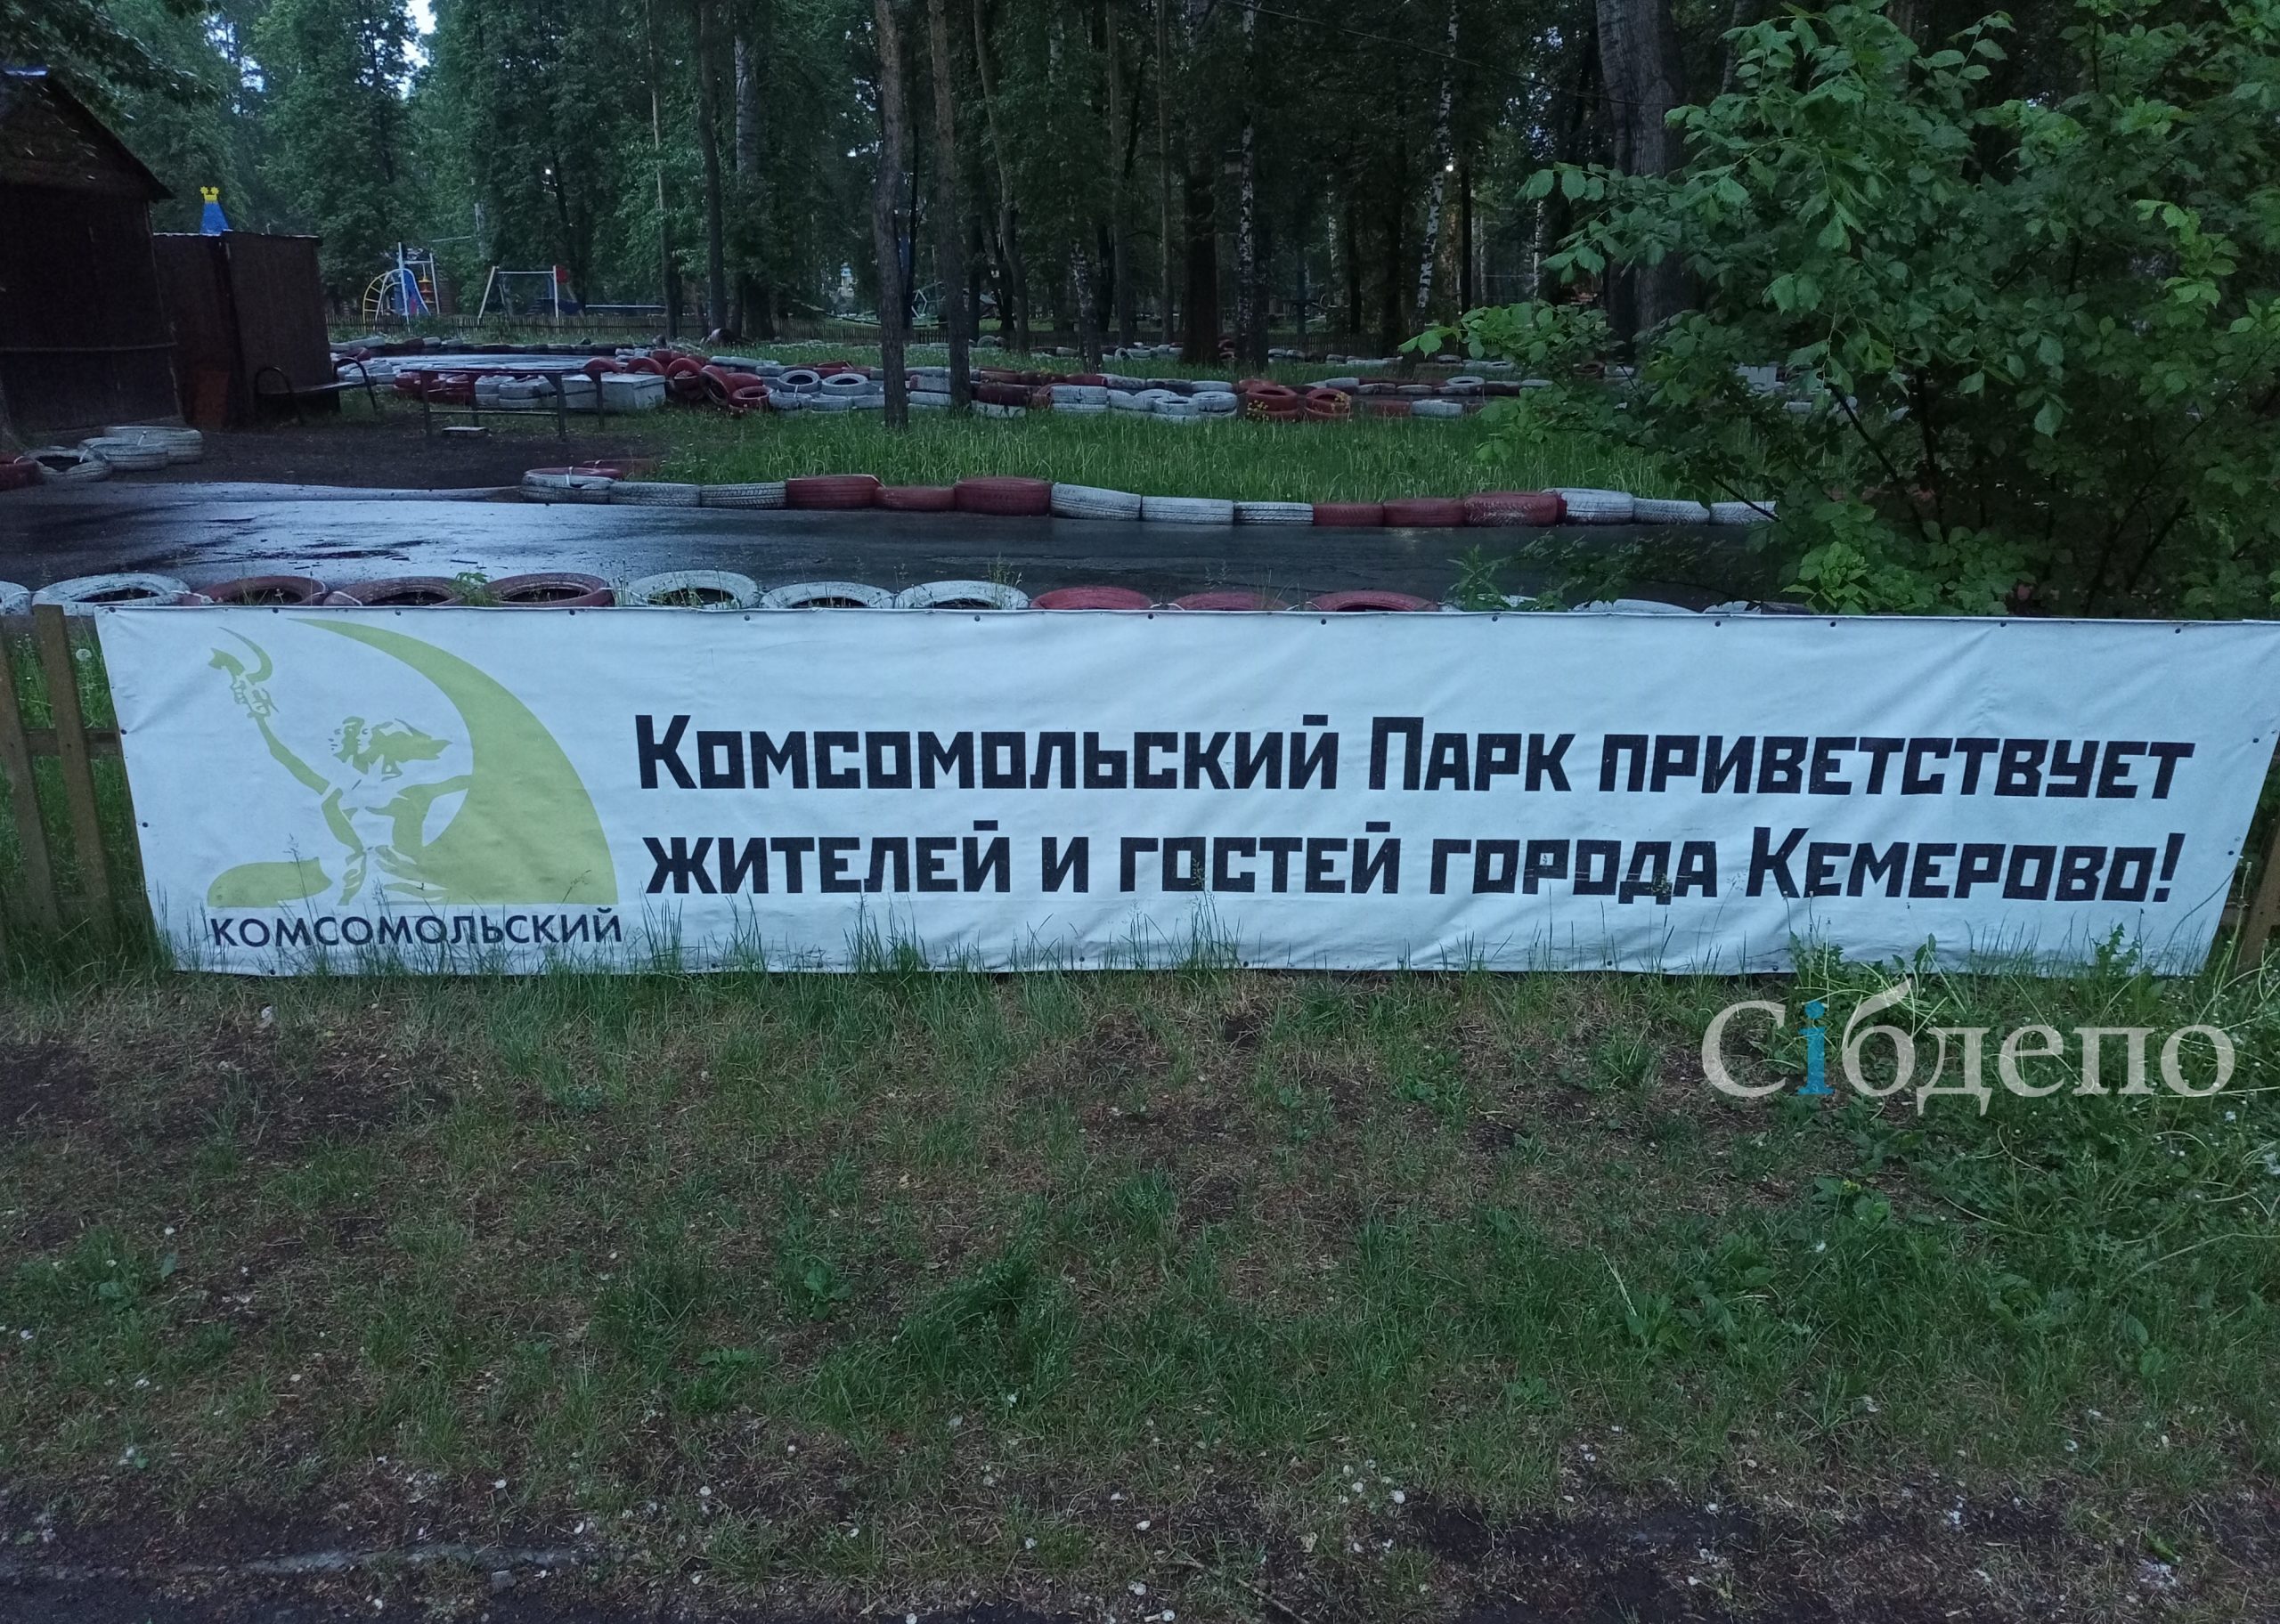 Мэрия Кемерова назвала виновного в повышении цен в скандальном парке